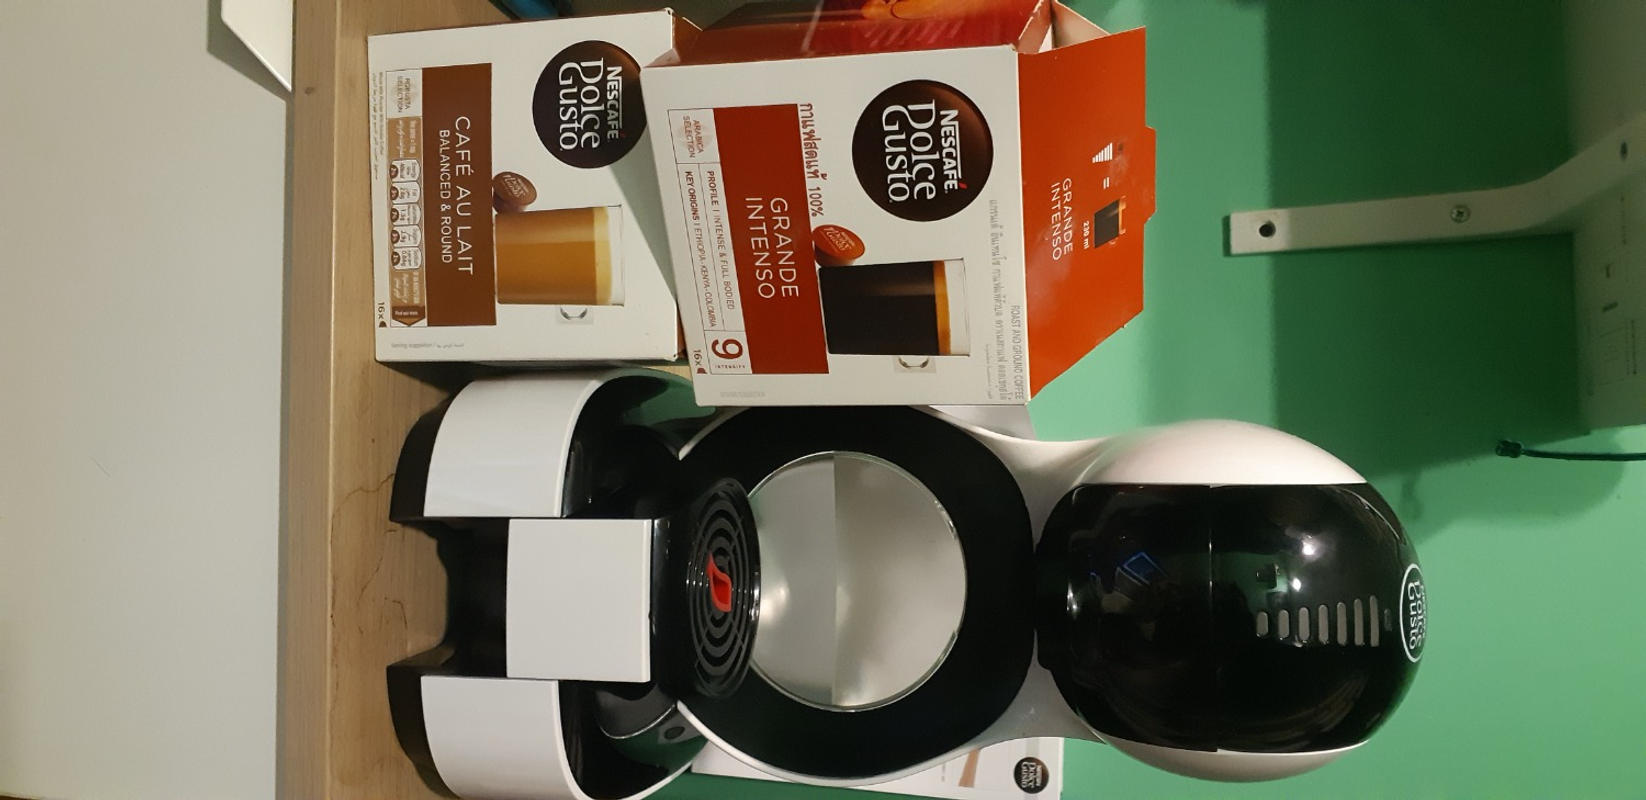 Nescafé Dolce Gusto Lumio coffee machine review